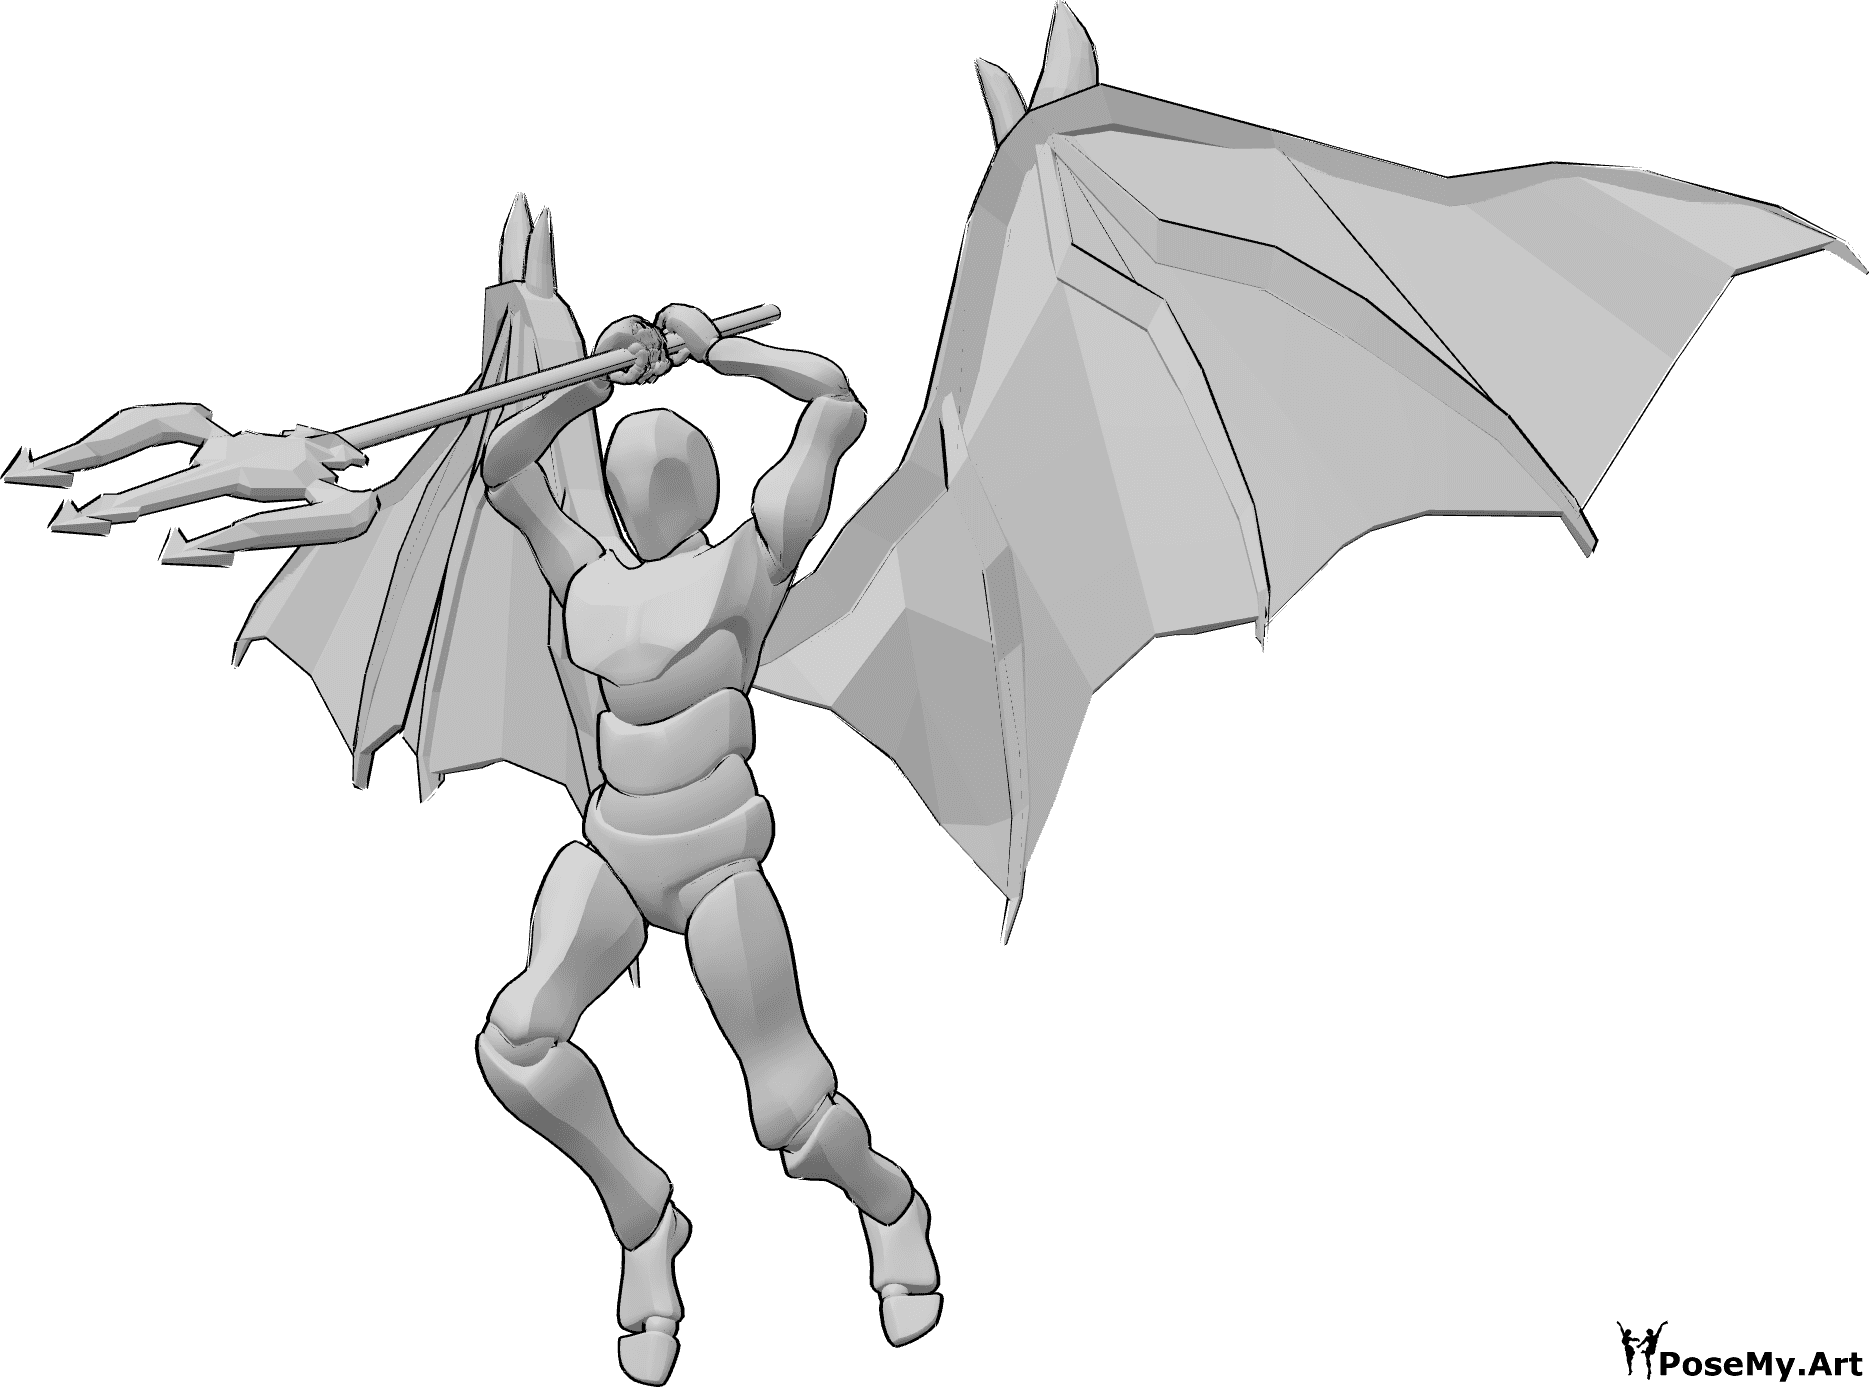 Riferimento alle pose- Posa dinamica di attacco del demone - Il maschio con le ali da diavolo sta saltando in alto per attaccare, tenendo il tridente con entrambe le mani sopra la testa